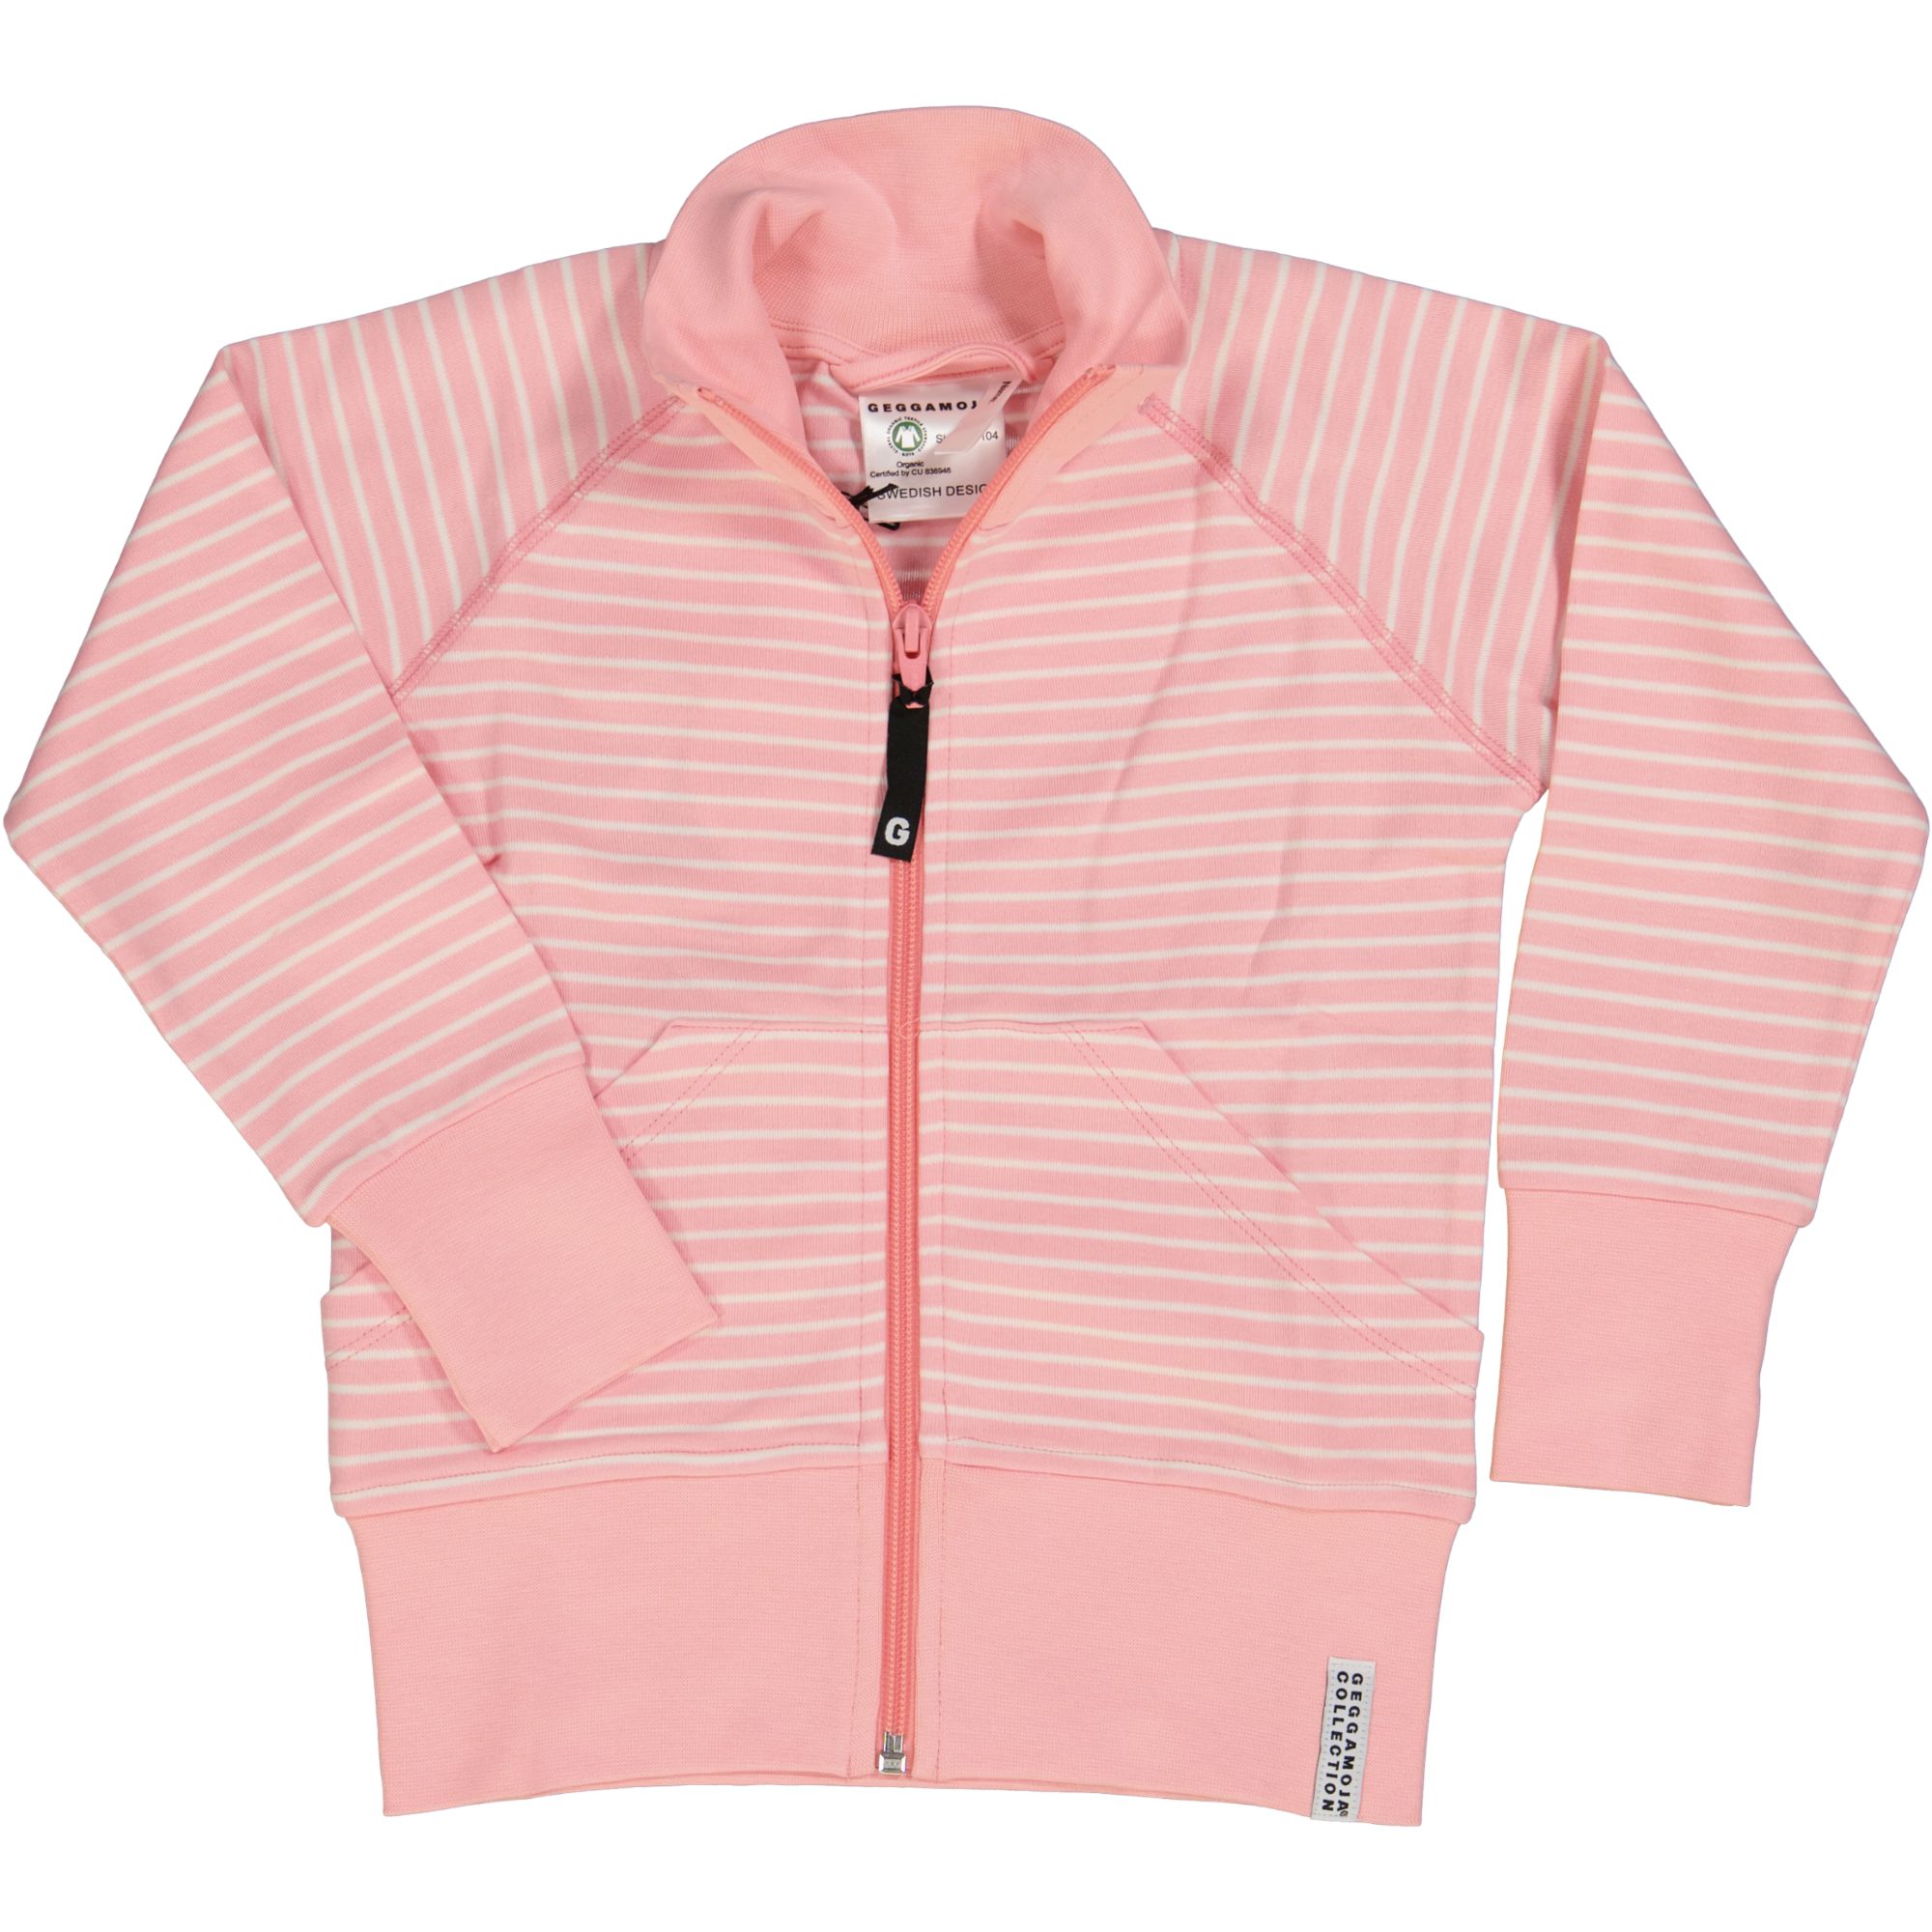 Zipsweater Classic Pink/white